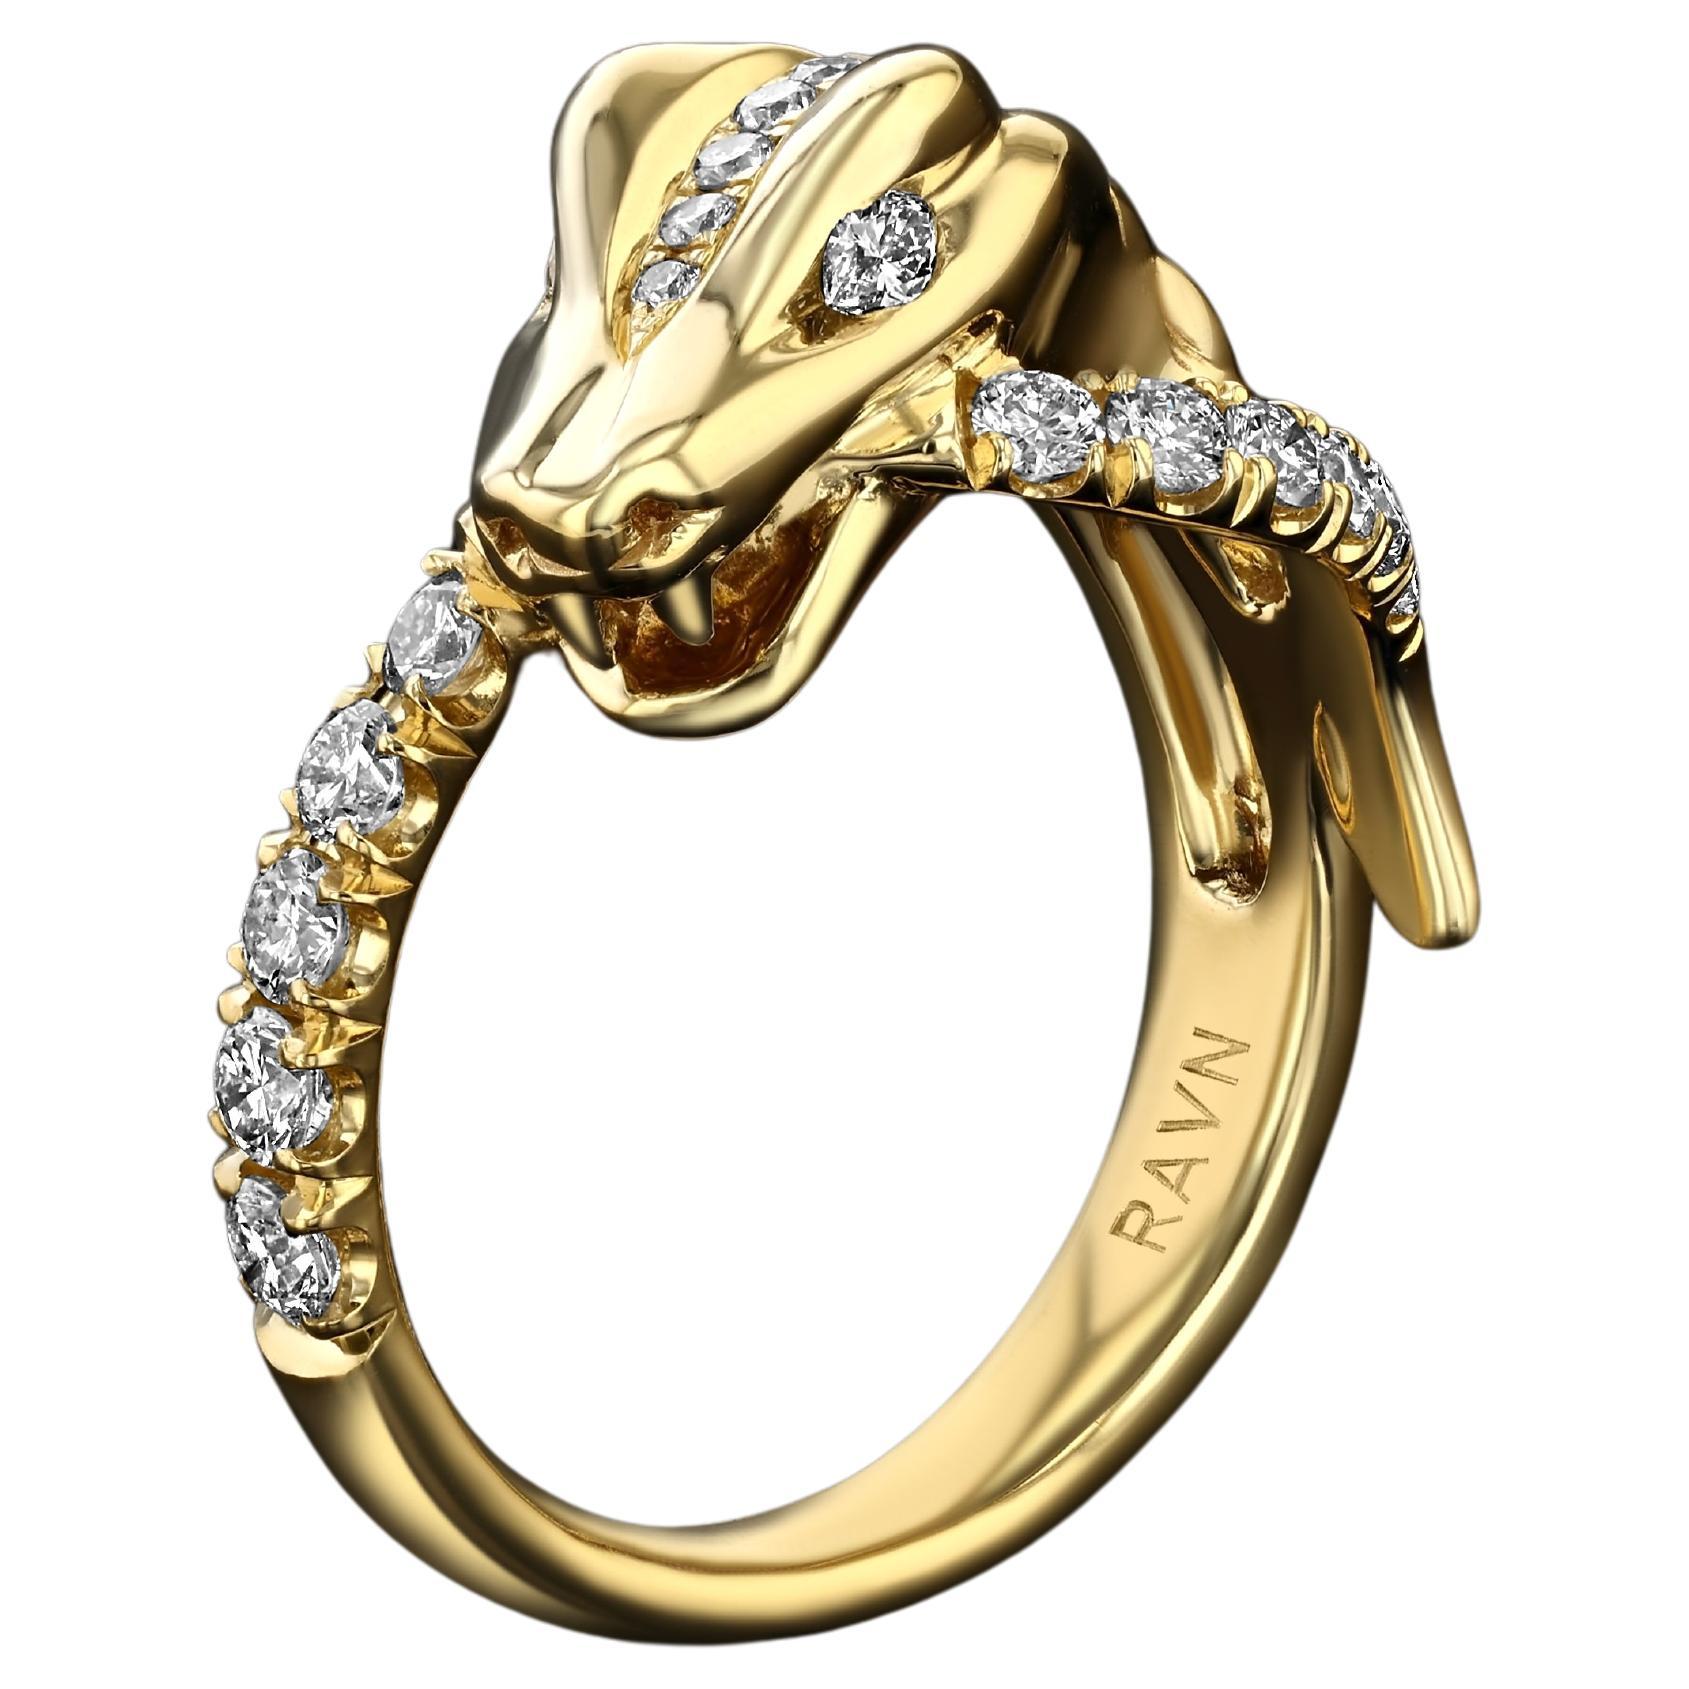 House of RAVN, ouroborus enroulé en or 14 carats avec queue de serpent en diamants